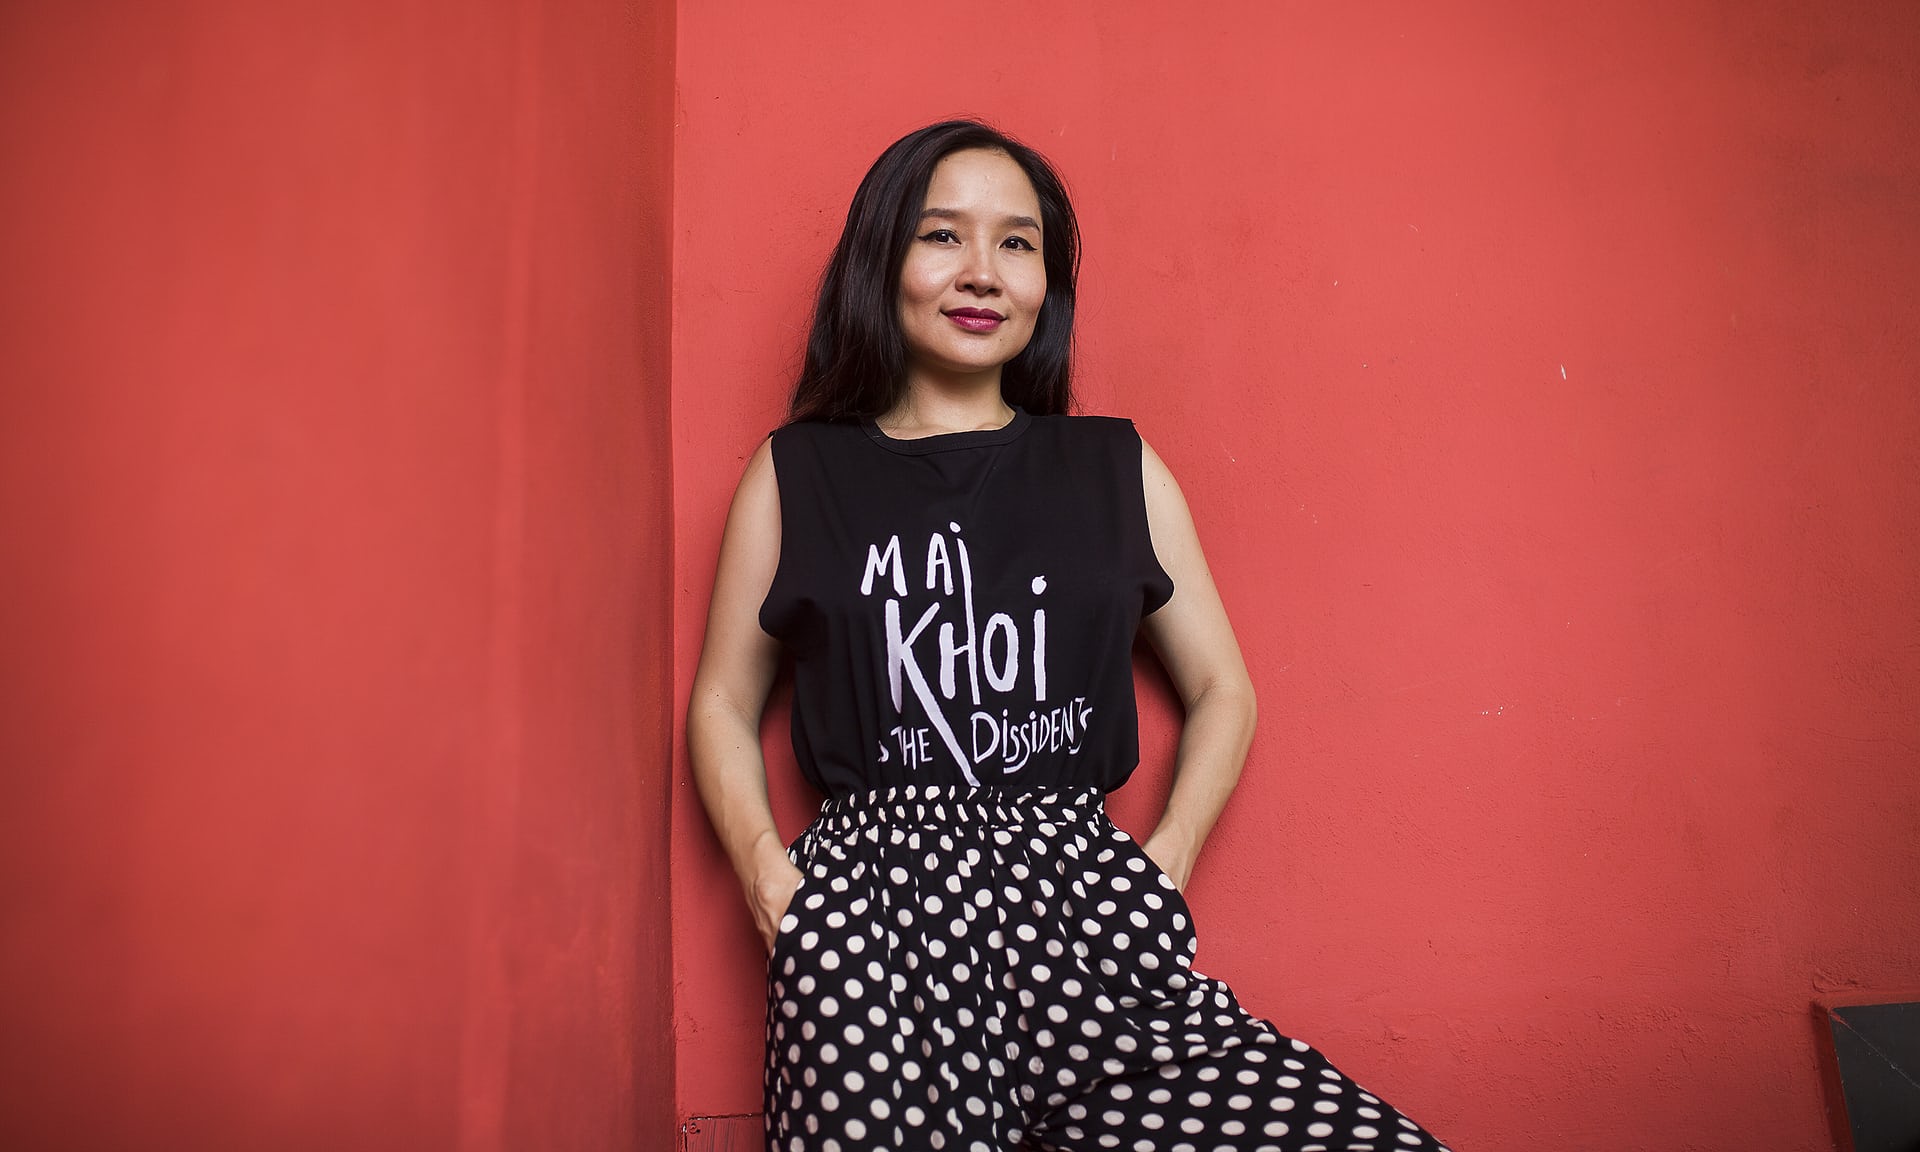 Ca Si Mai Khoi - Mùa hè không yên ả – Cuộc đàn áp người bất đồng chính kiến lớn nhất trong nhiều năm qua - Musician Mai Khoi at a Hanoi cafe on 19 August